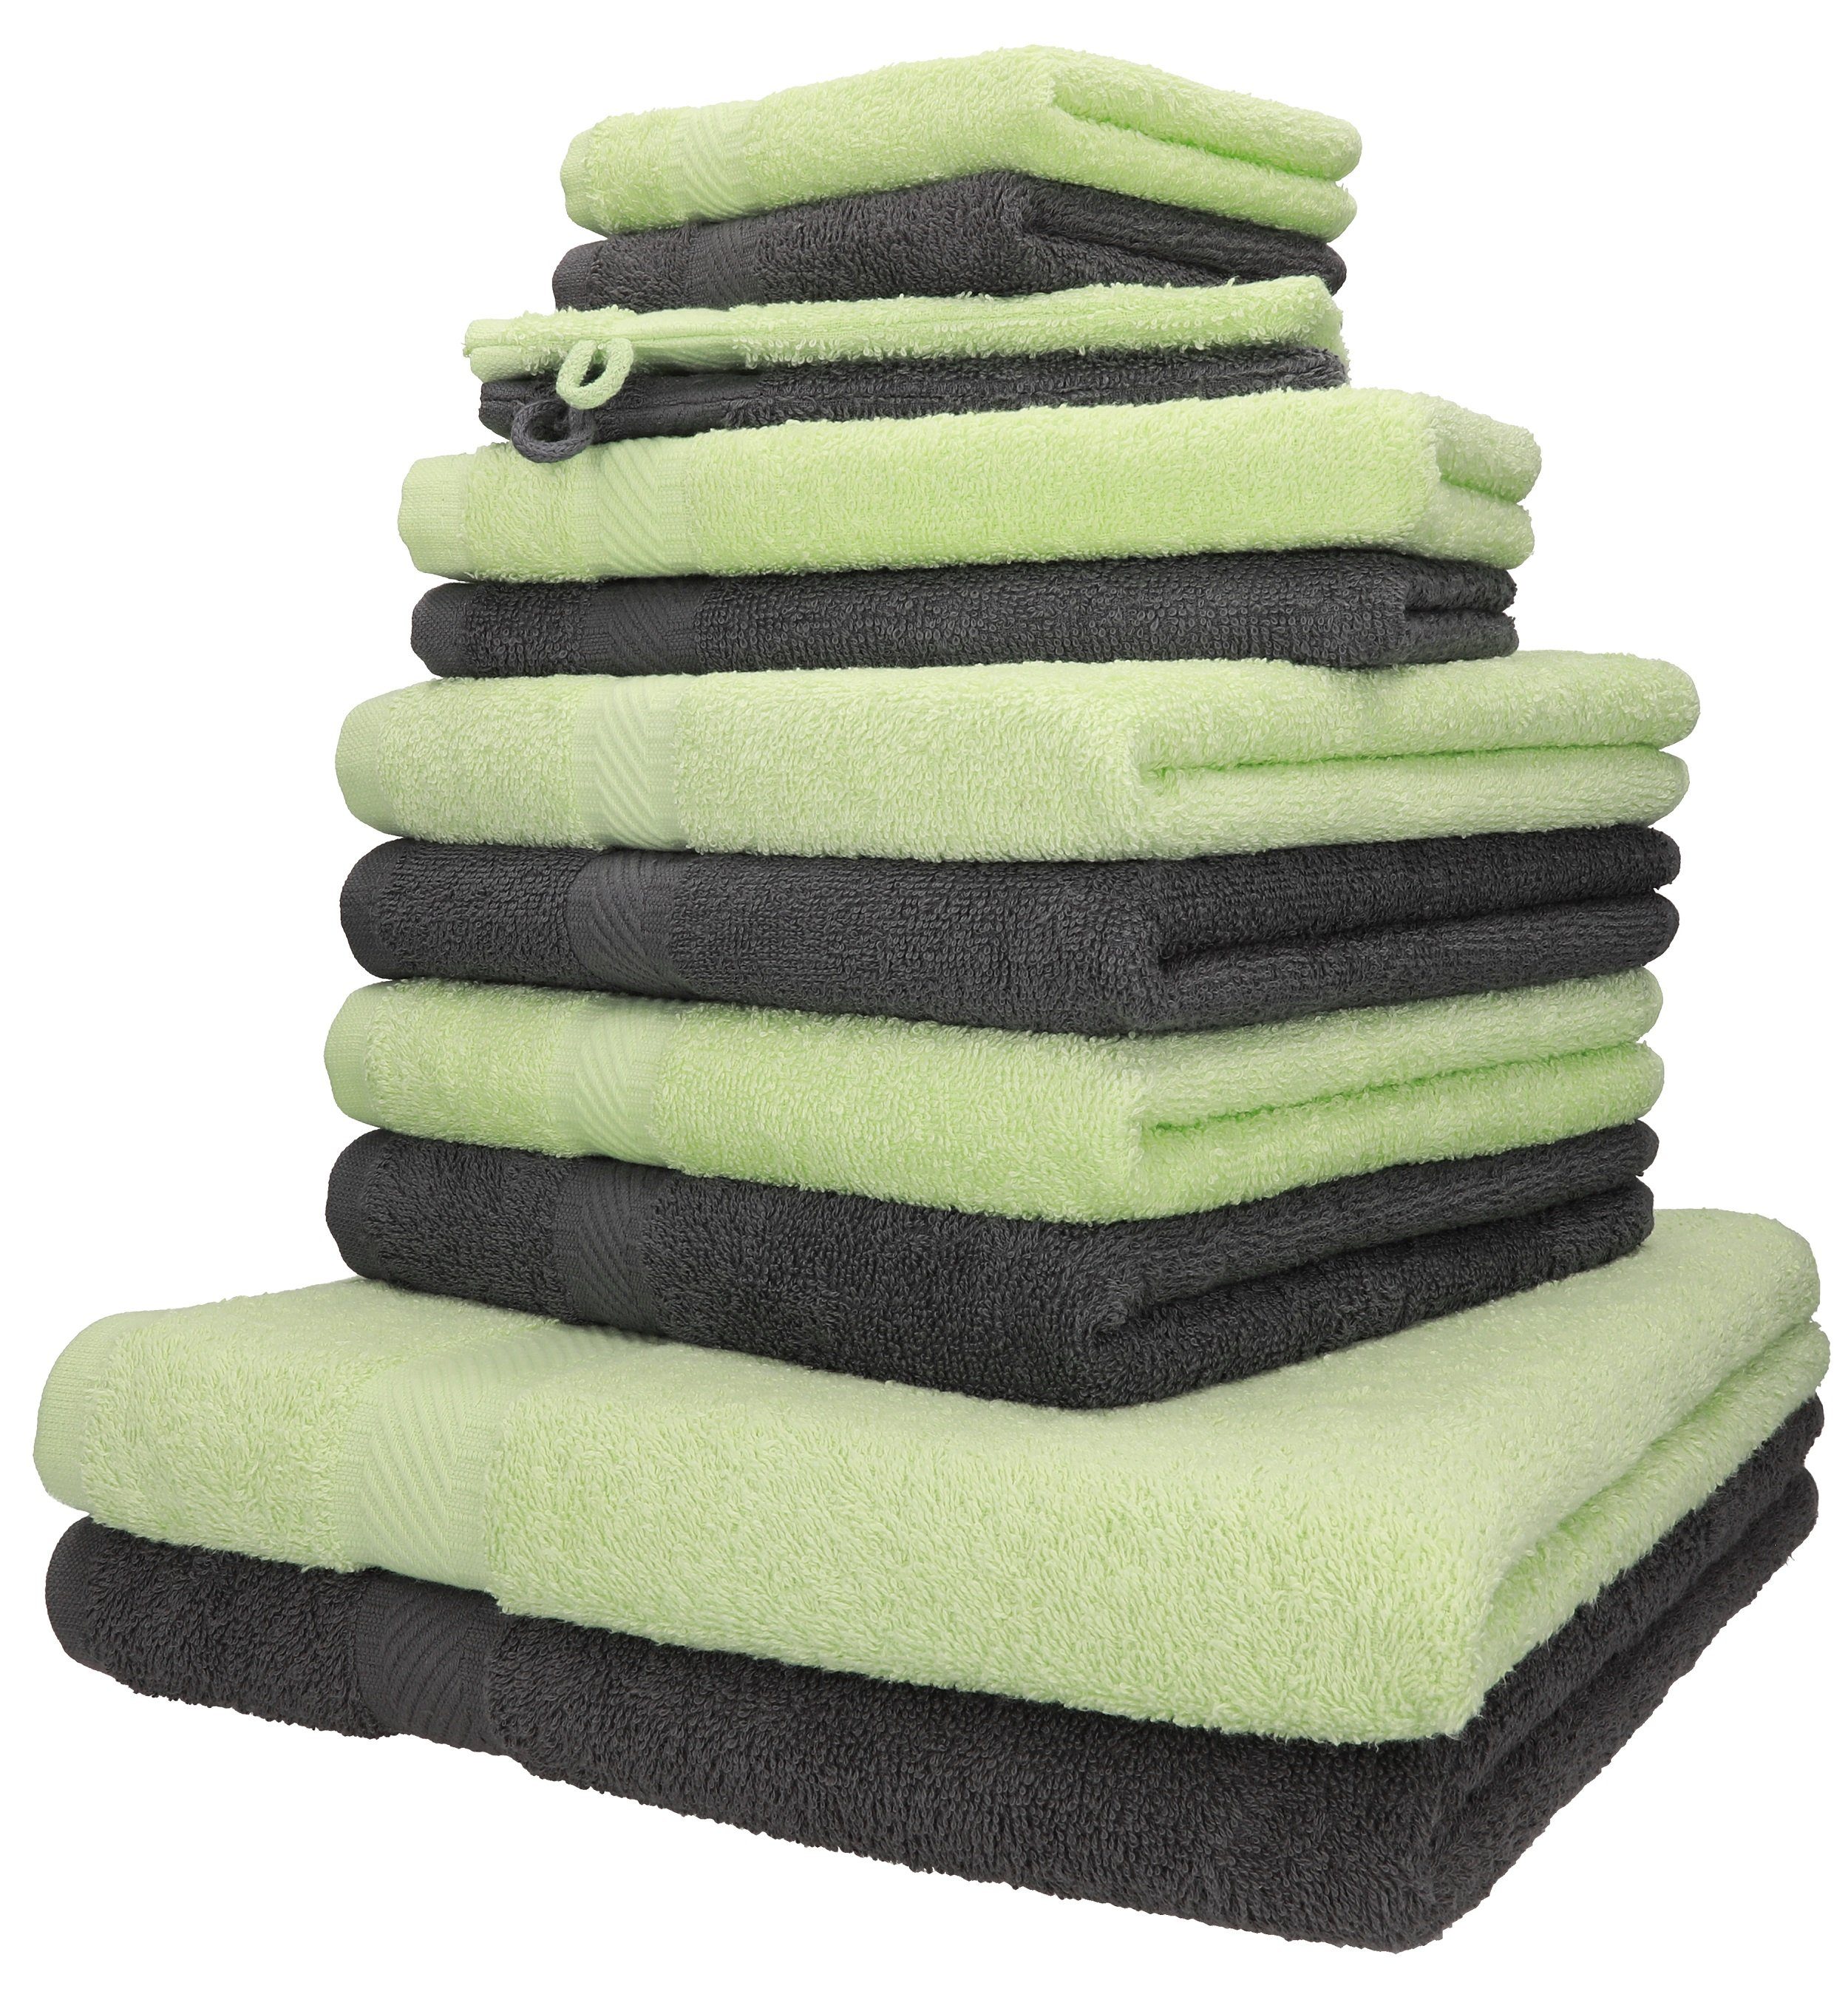 2 2 Baumwolle 12-TLG. Set grün Seiftücher Palermo anthrazit, 100% Baumwolle, Gästetücher Handtücher Handtuch 2 (12-tlg) Handtuch-Set Betz und Waschhandschuhe 100% 4 Liegetücher 2 Farbe